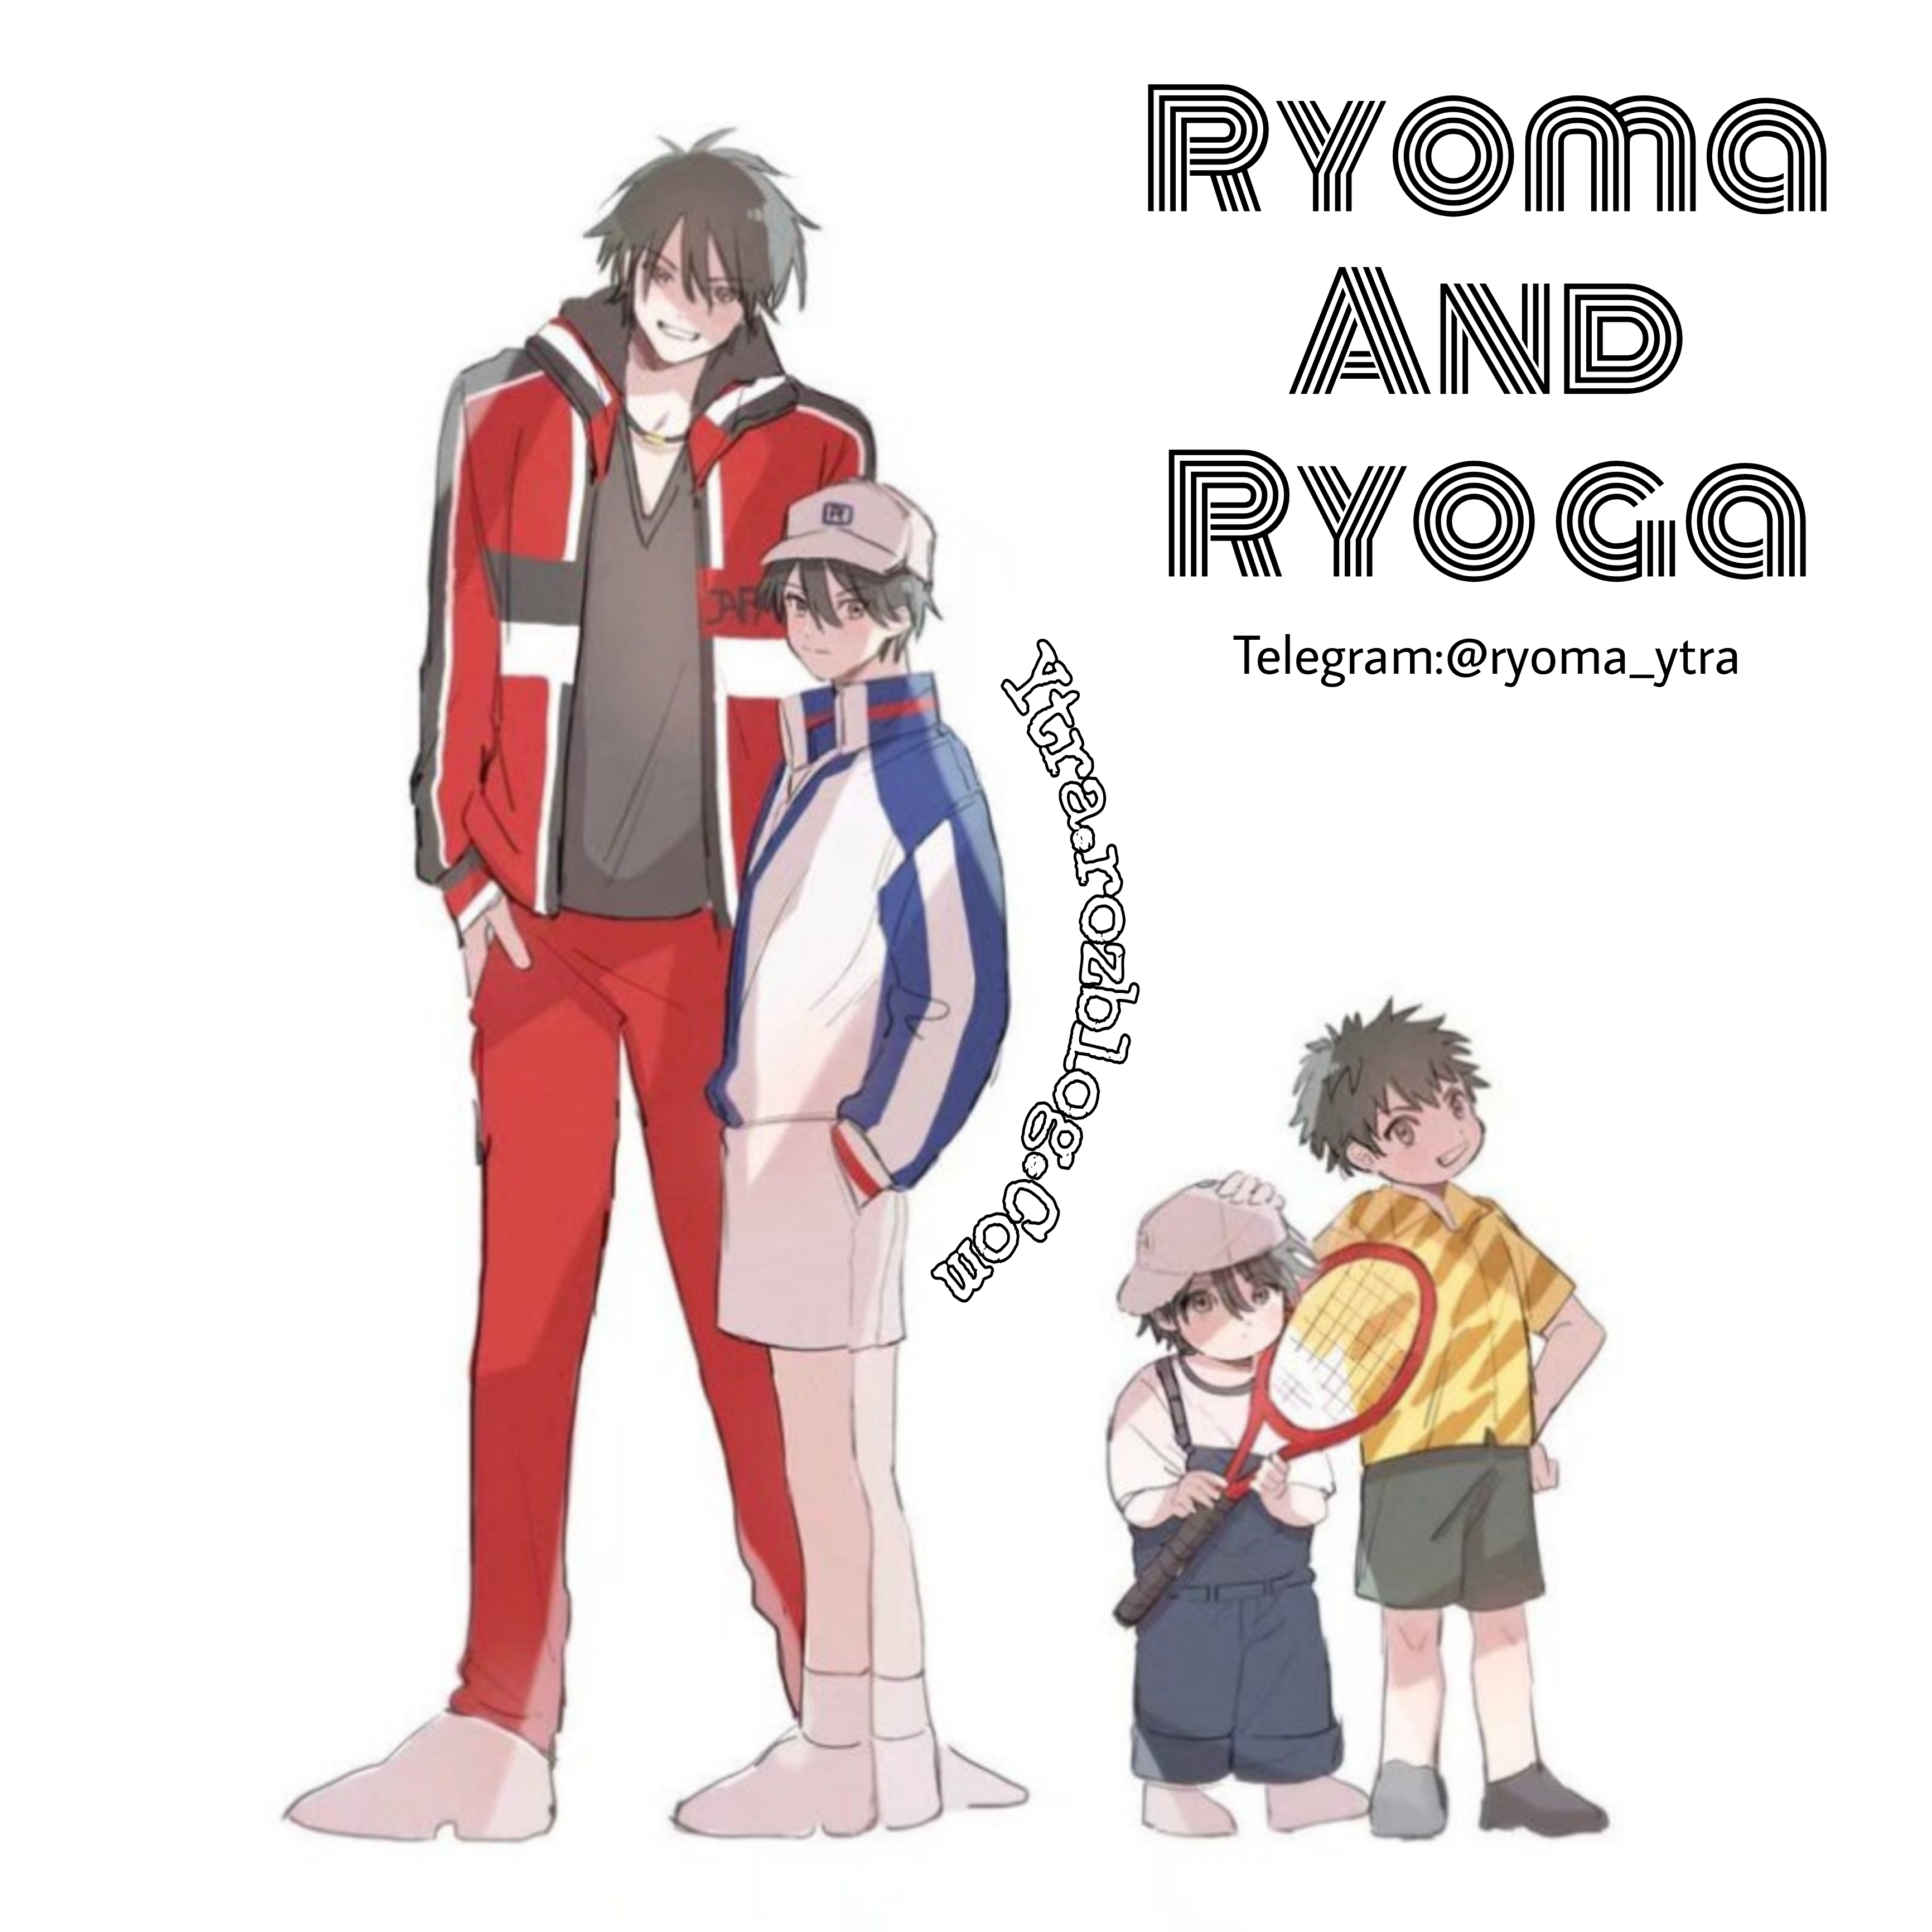 ریوما و ریوگا